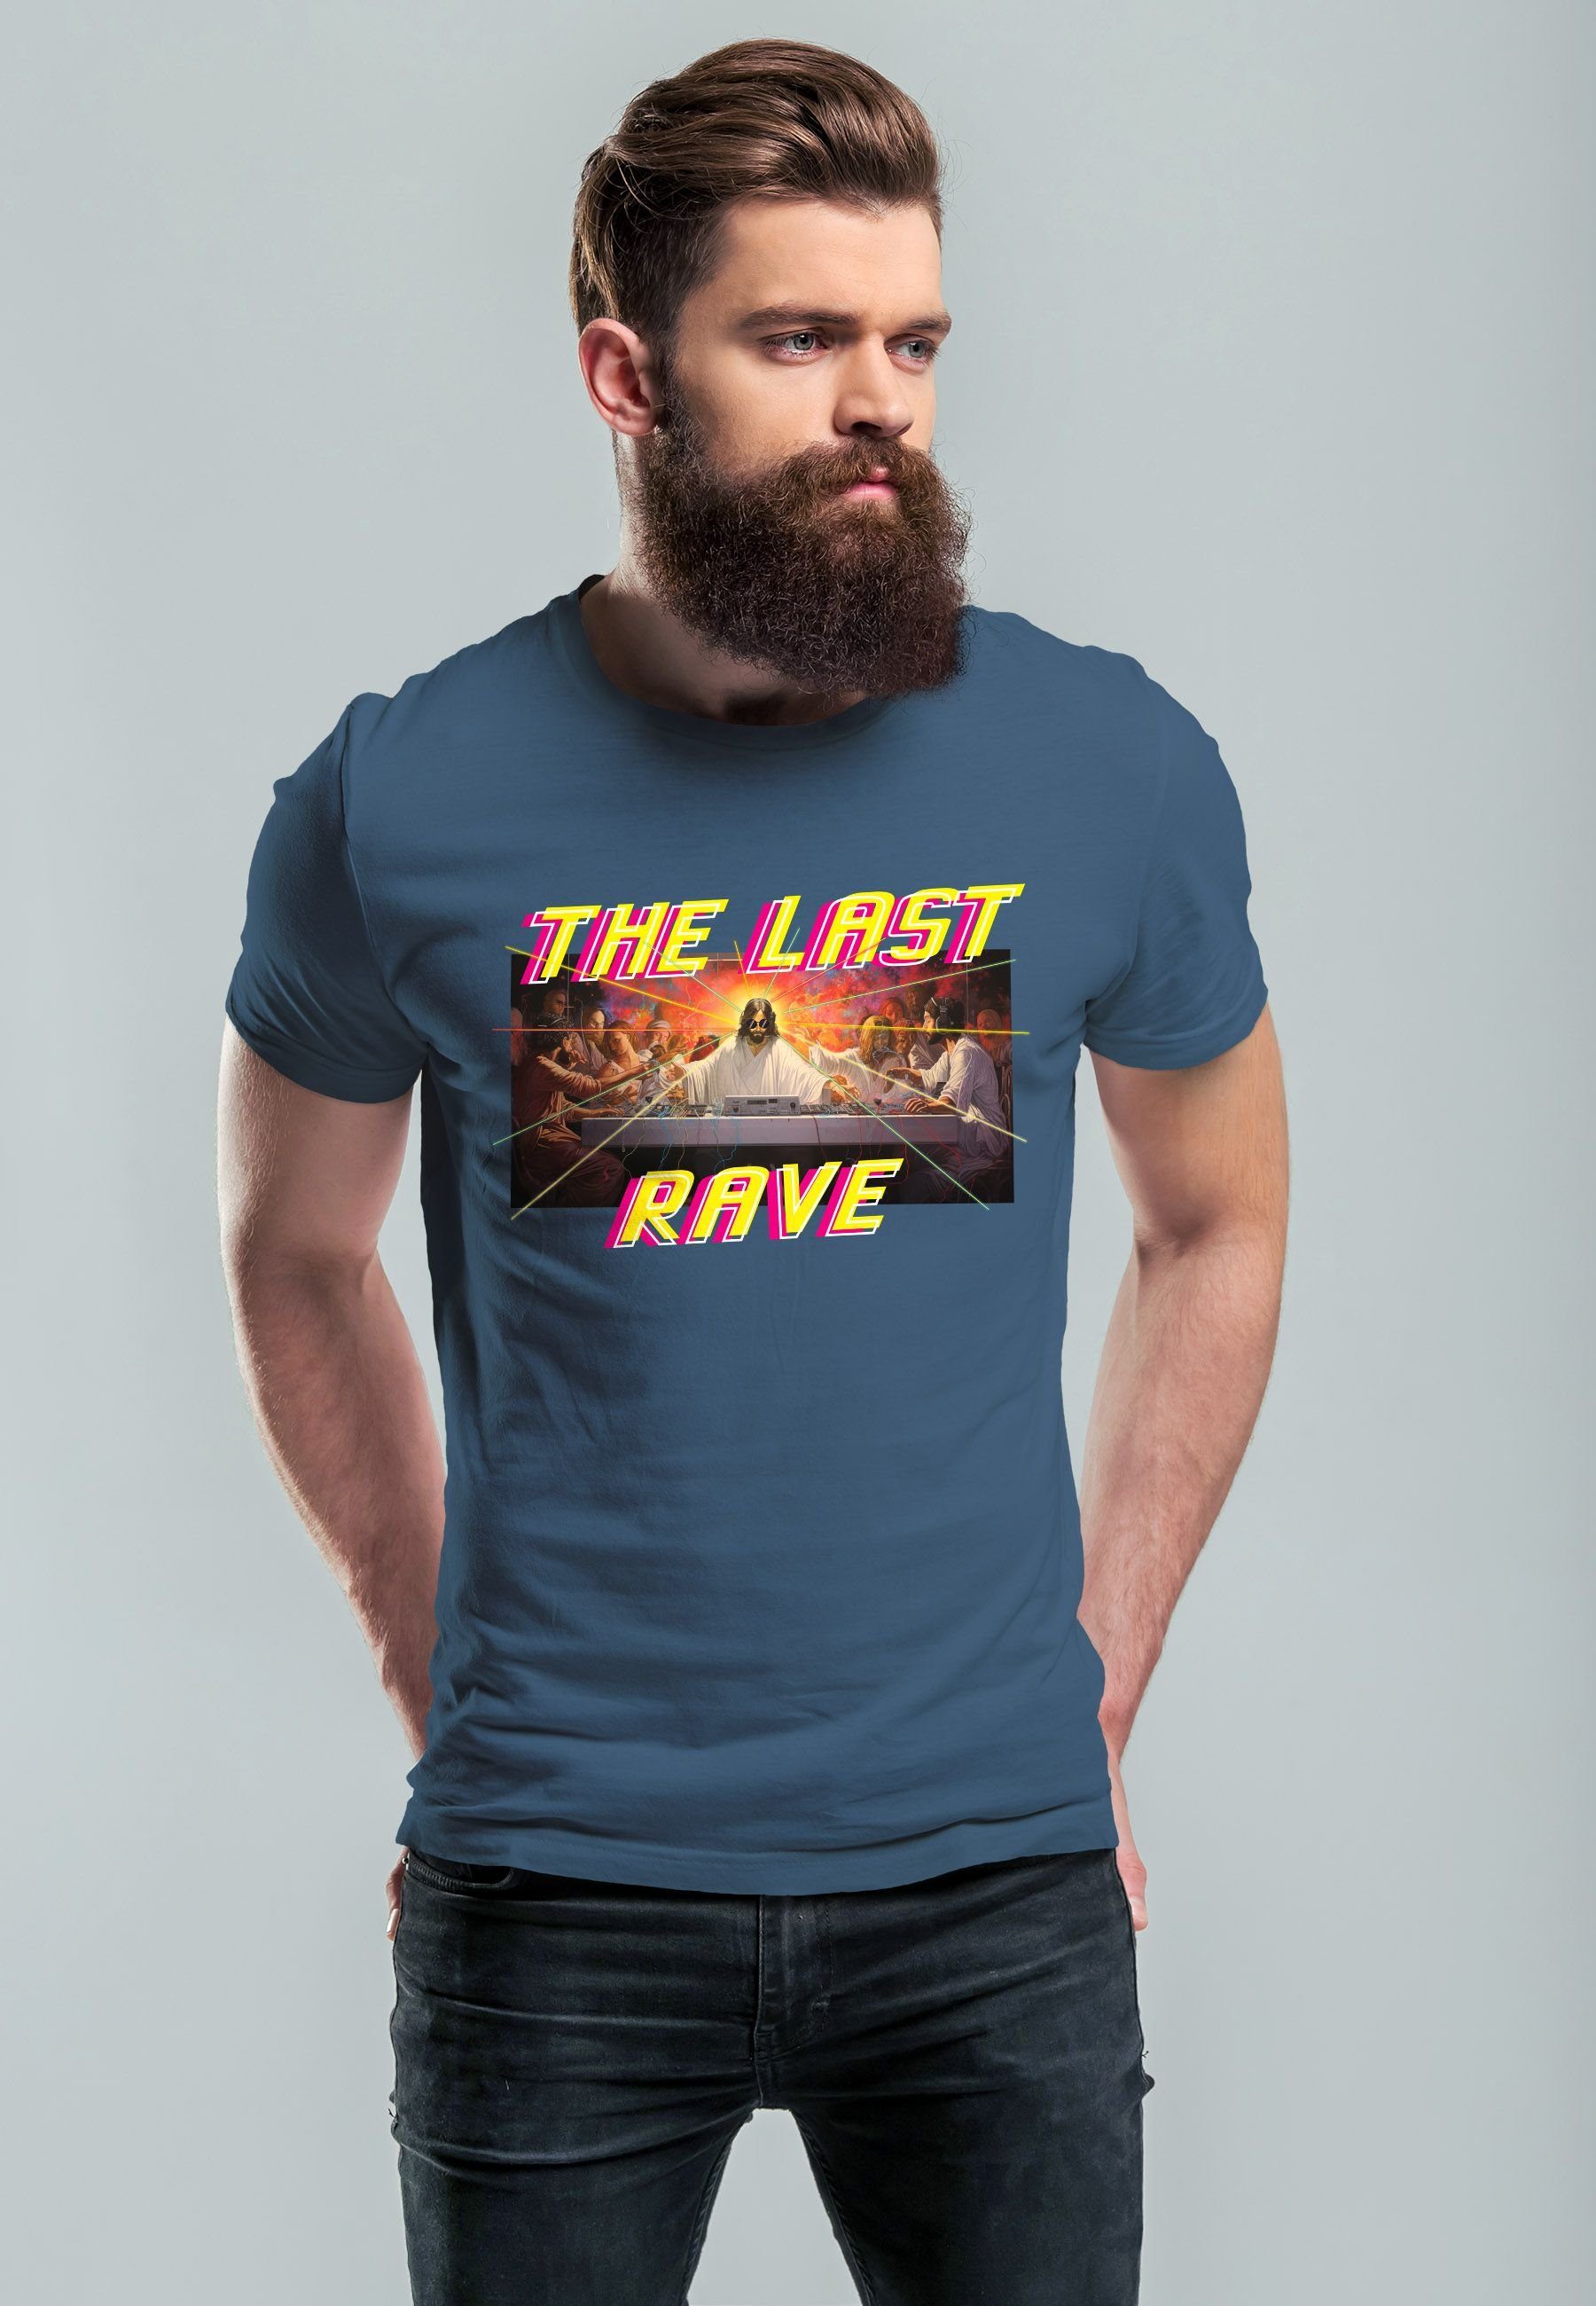 Neverless Print-Shirt Herren T-Shirt Techno Last letzte Jesus Abendmahl Rave blue Parodie The mit Print Das denim